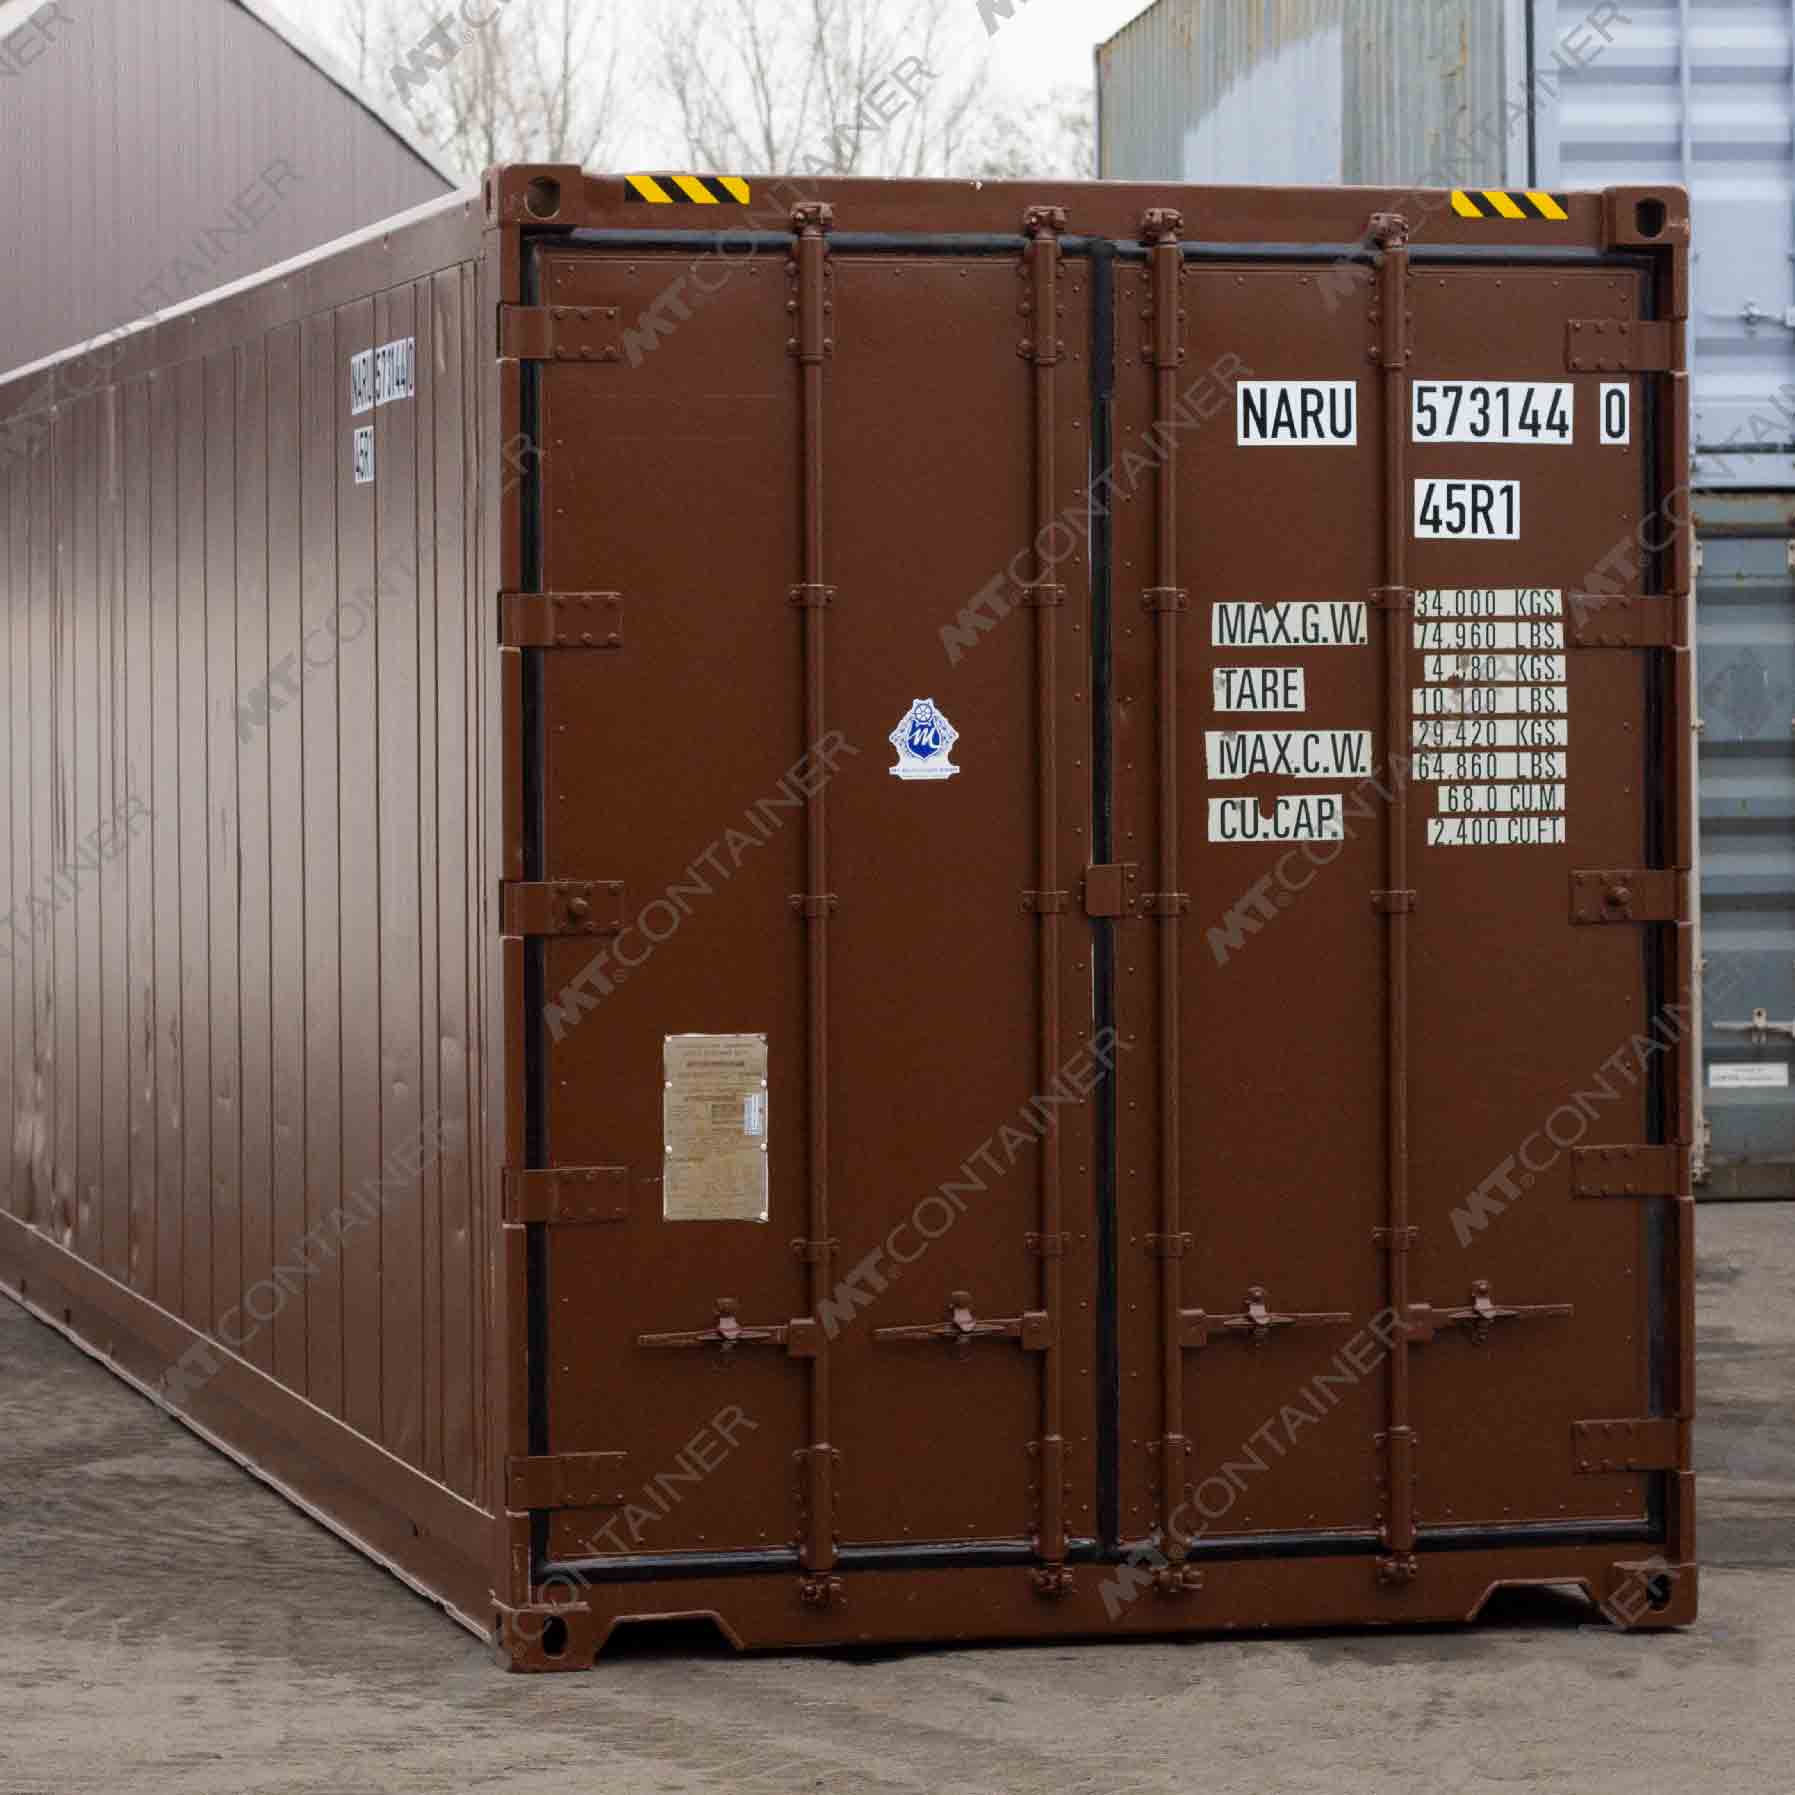 Ein brauner 40 Fuss High Cube Kühlcontainer mit der Aufschrift "NARU 573144-0".